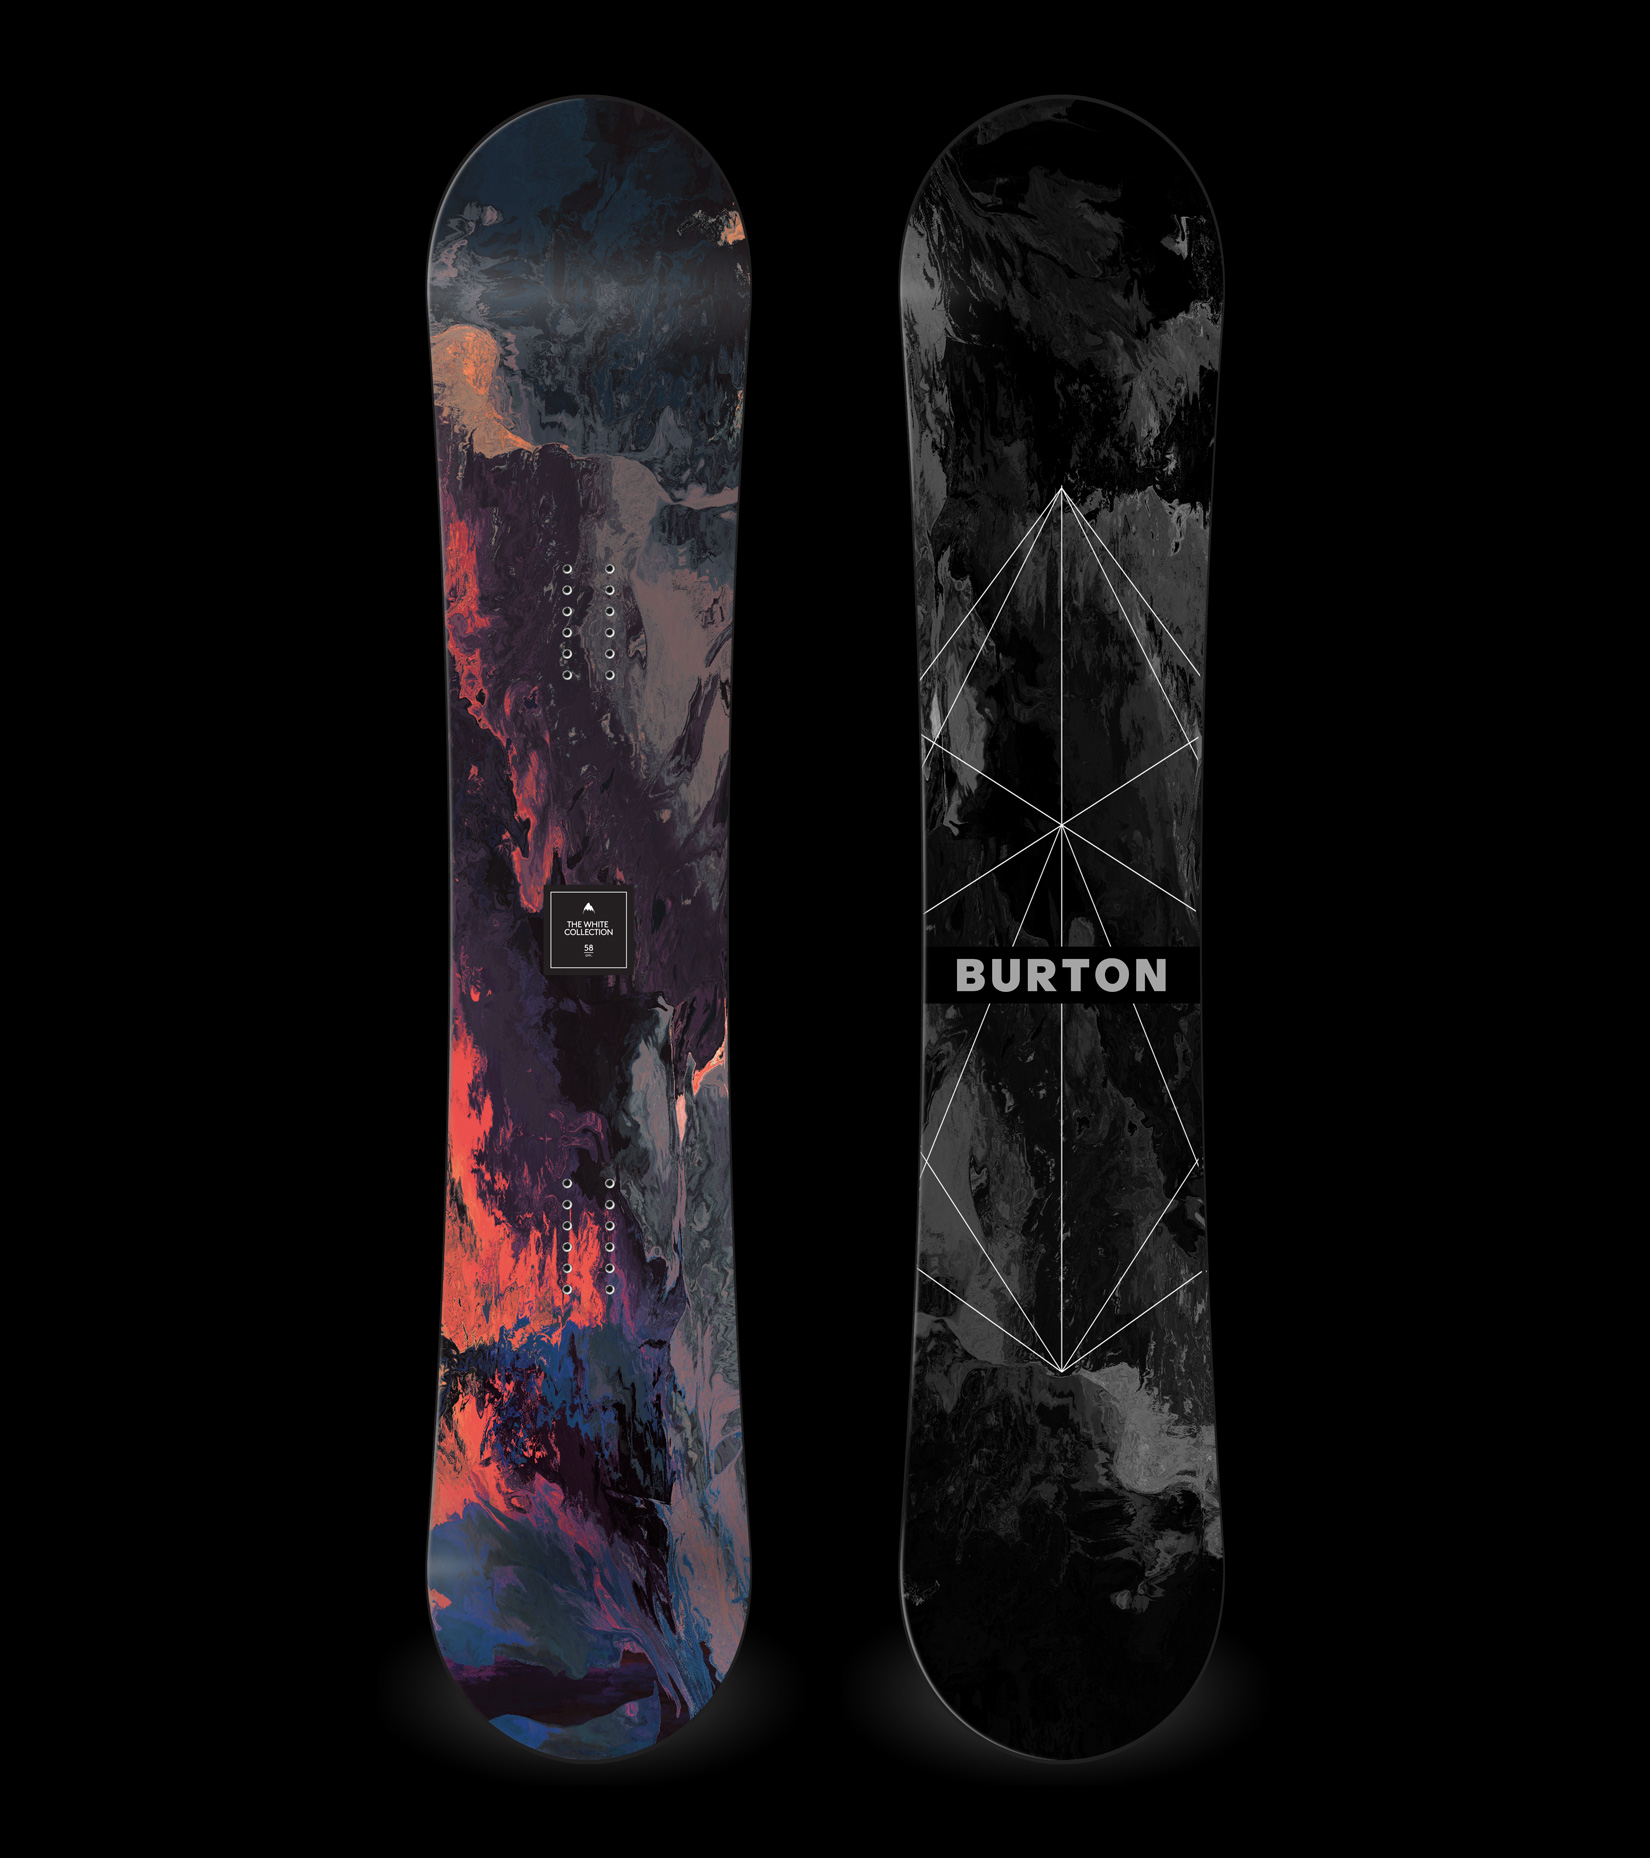 Ontwarren Weggooien samen Shaun White – Burton Snowboard (2018) - Studio – Leif Podhajsky